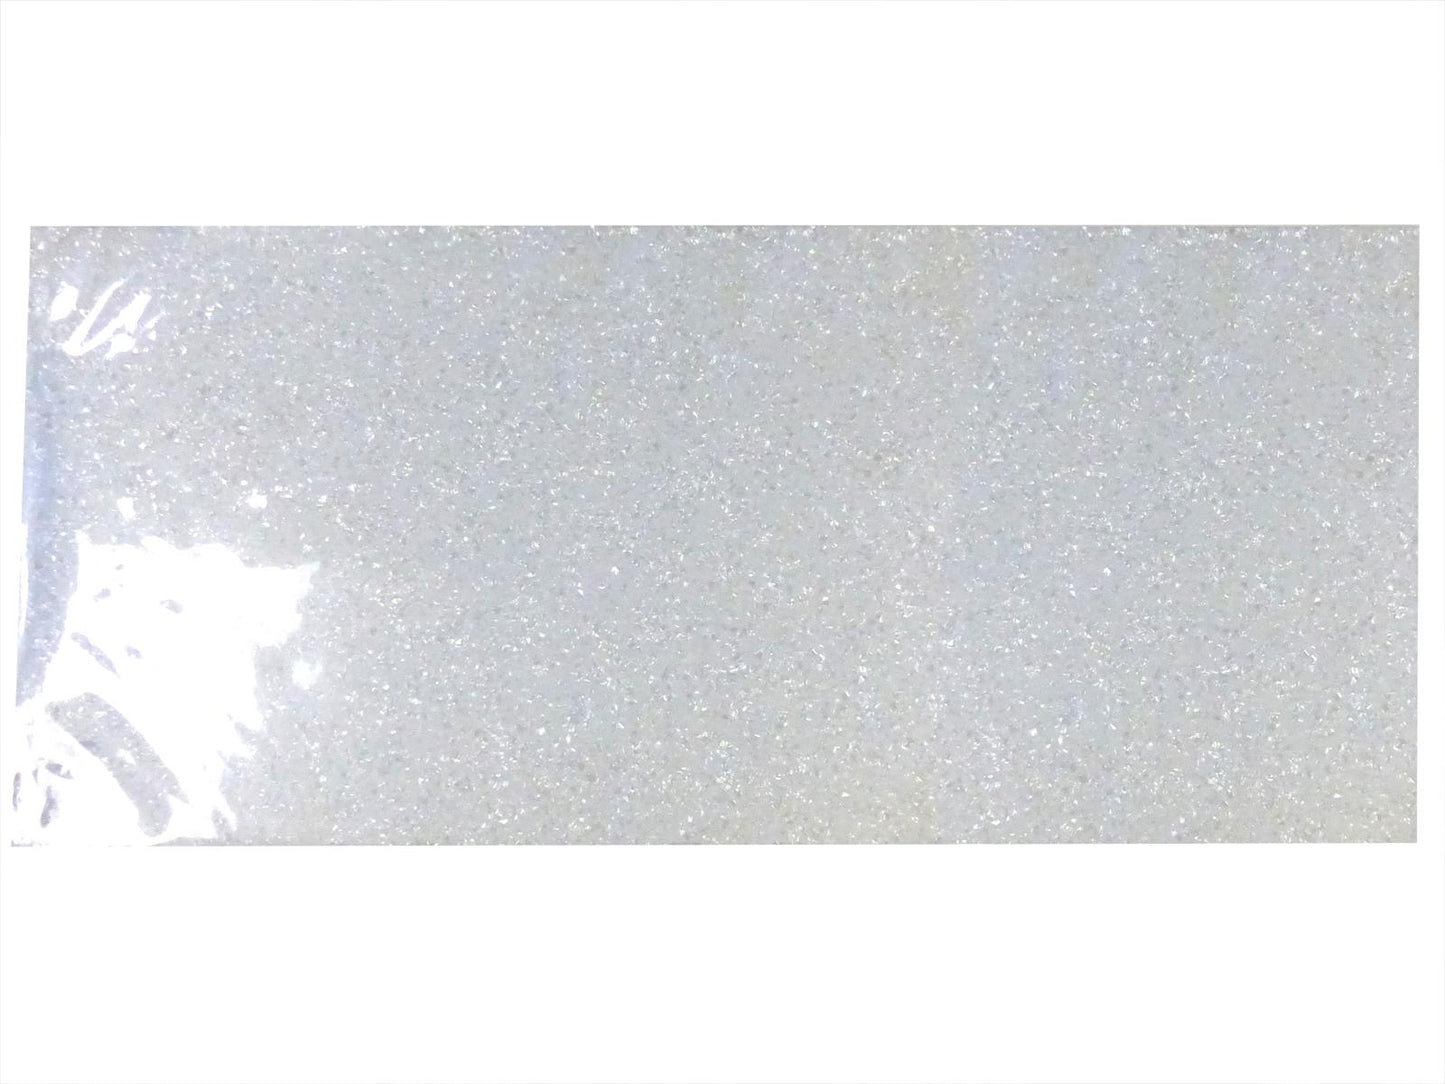 Incudo White Pearloid Celluloid Veneer / Wrap - 1600x700x0.17mm (63x27.56x0.007")